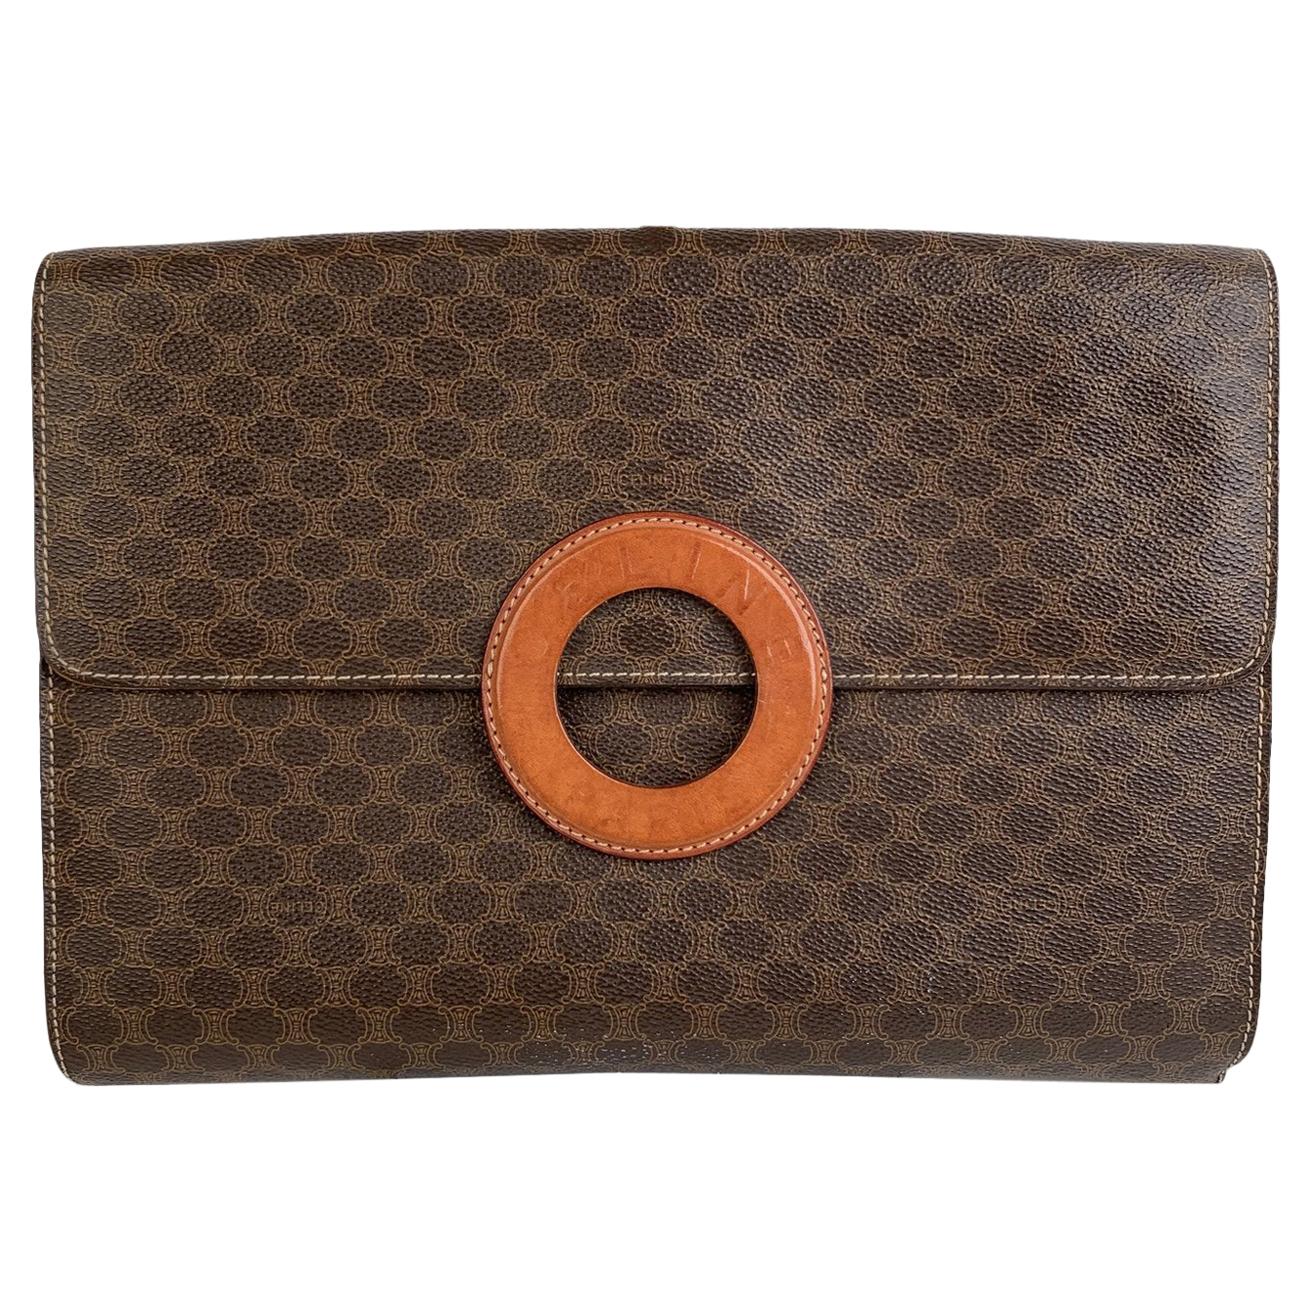 Celine Vintage Brown Macadam Canvas Clutch Bag Handbag